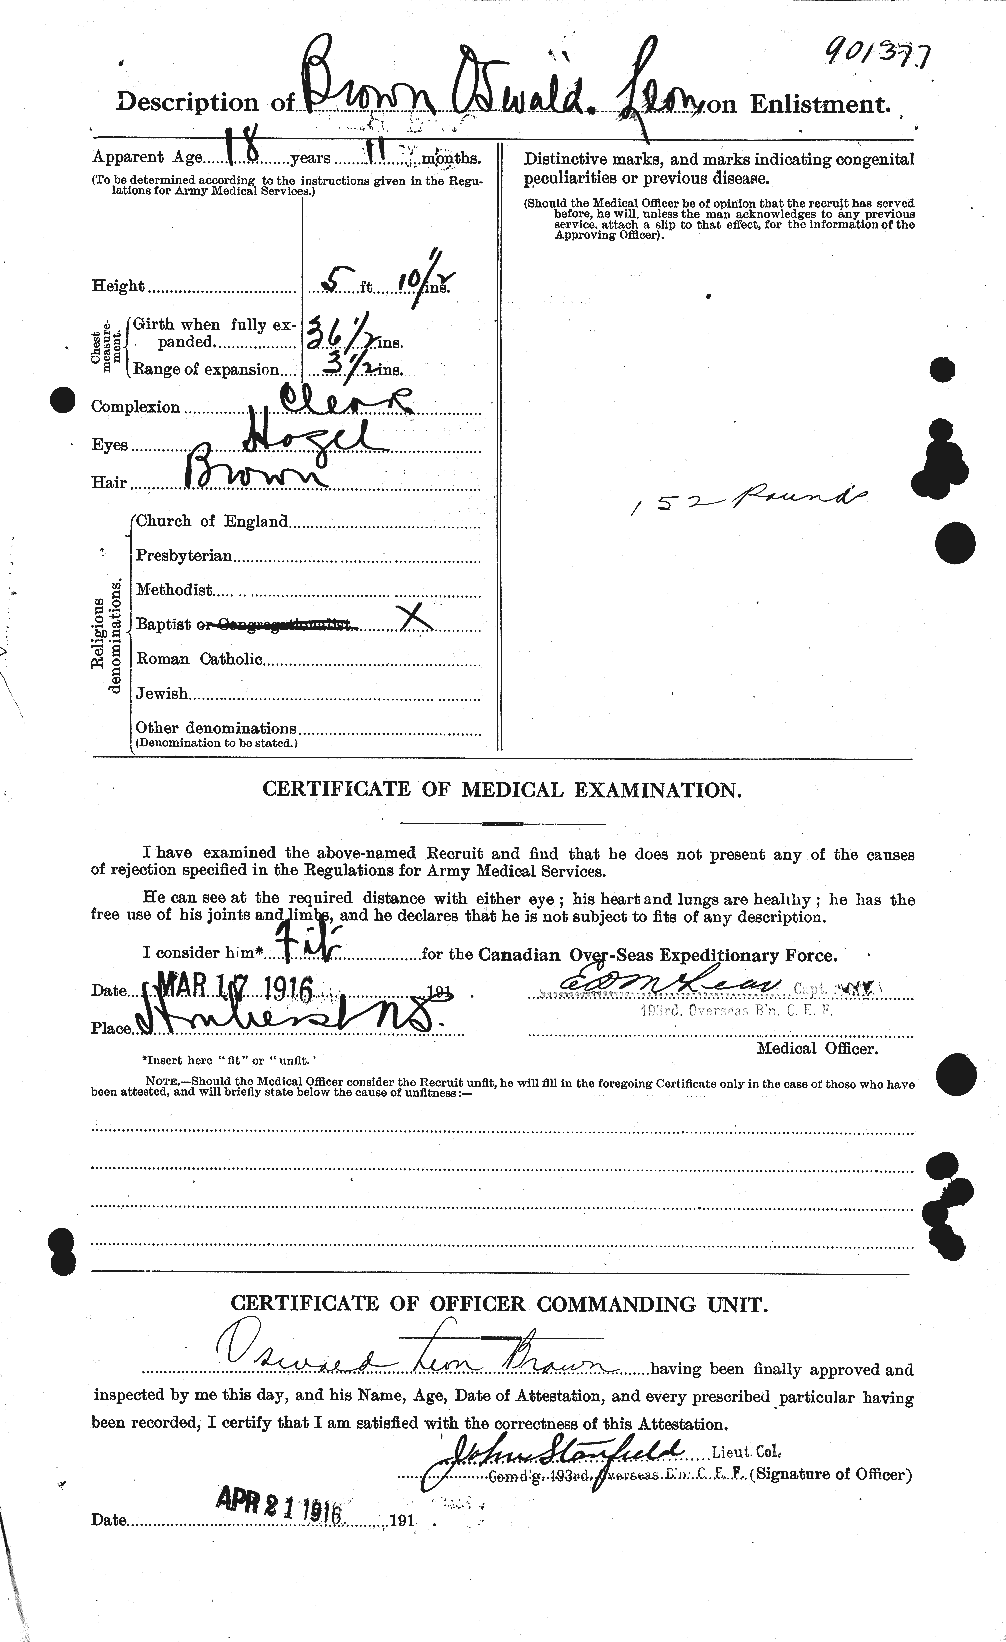 Dossiers du Personnel de la Première Guerre mondiale - CEC 267143b